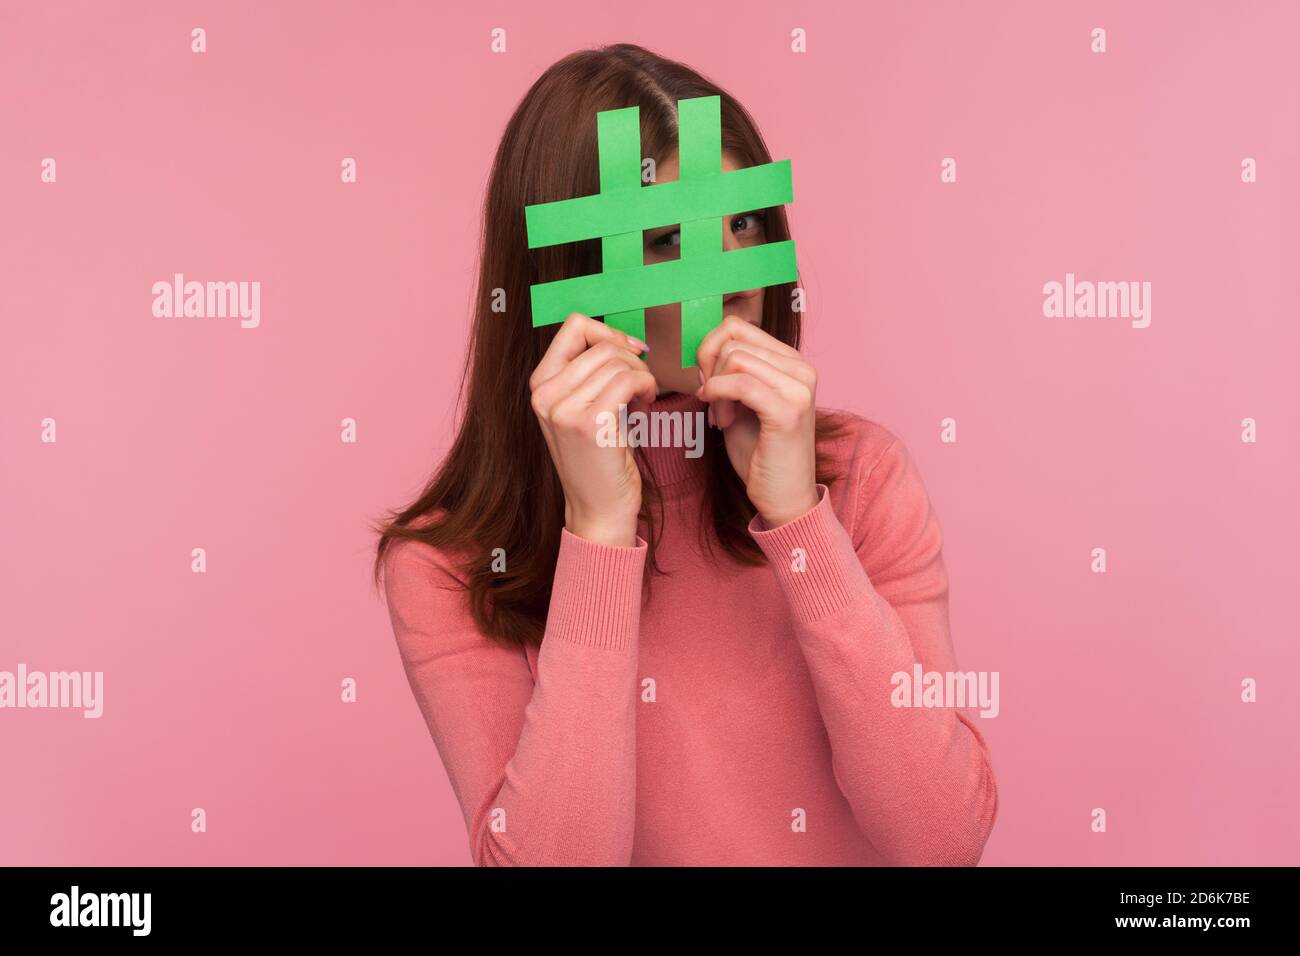 Curieuse brune femme en chandail rose regardant à travers le signe vert hashtag, à la recherche de bons postes dans les médias sociaux, espionnage. Prise de vue en studio en intérieur Isola Banque D'Images